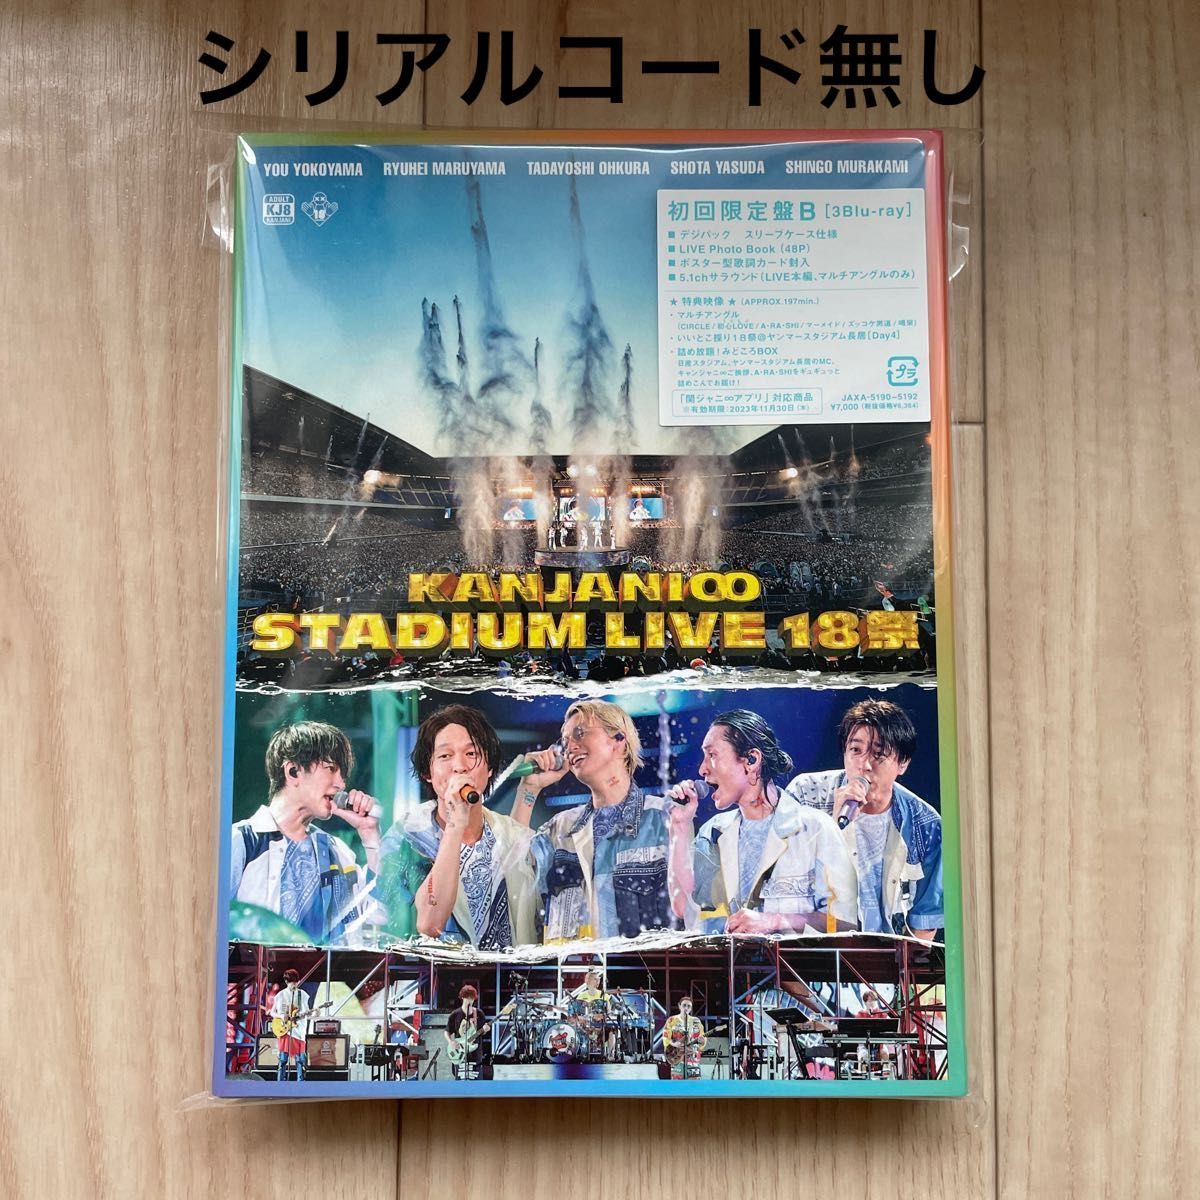 初回限定盤B (Blu-ray) 関ジャニ∞ 3Blu-ray/KANJANI∞ STADIUM LIVE １８祭